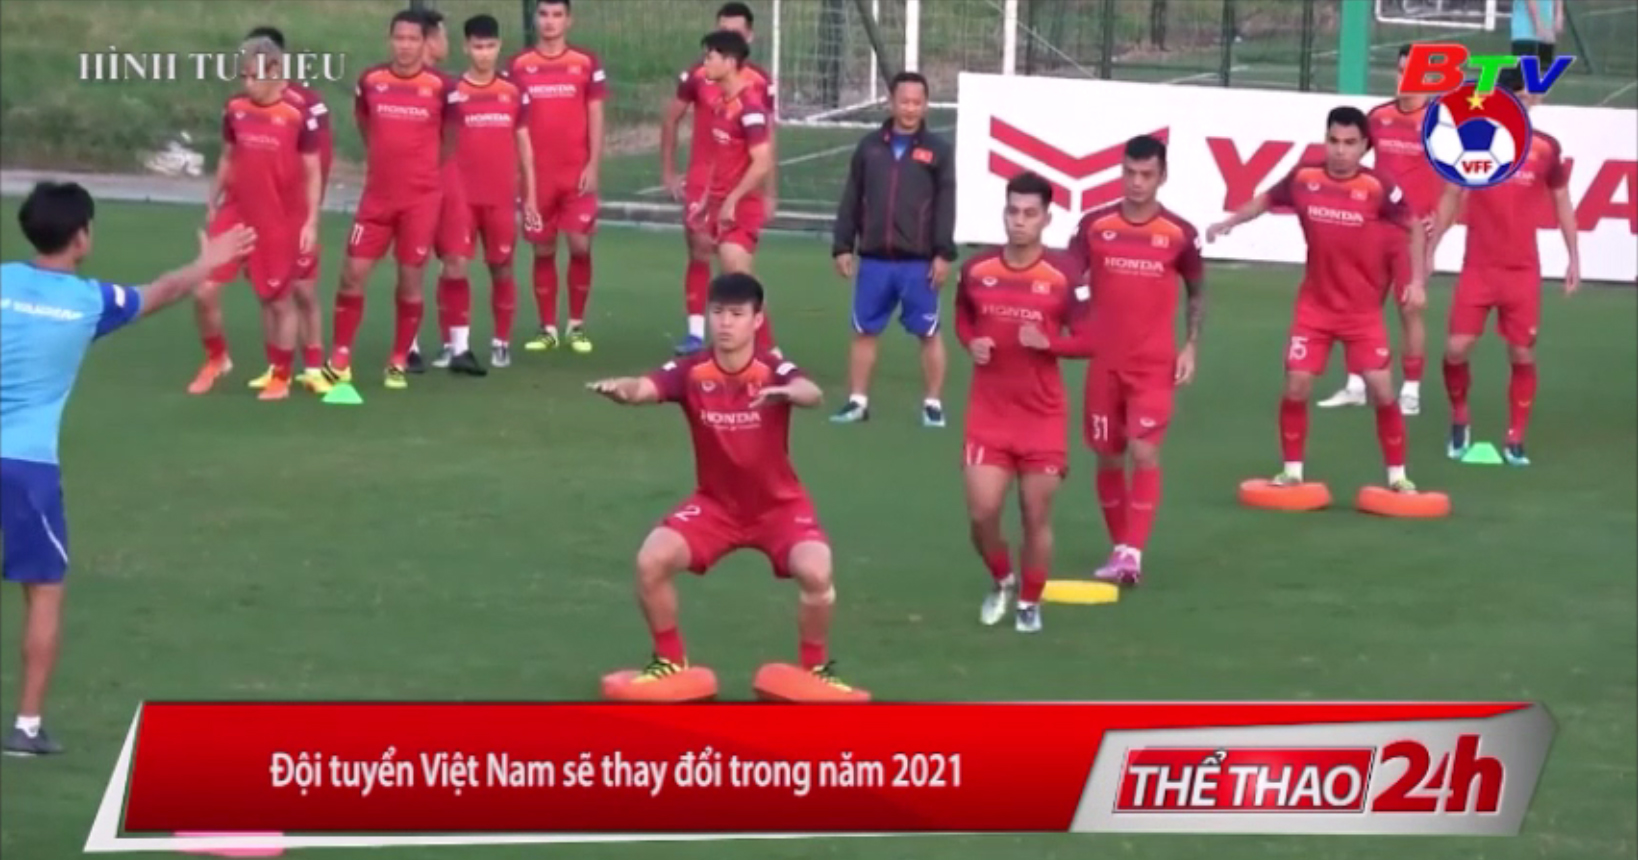 Đội tuyển Việt Nam sẽ thay đổi trong năm 2021